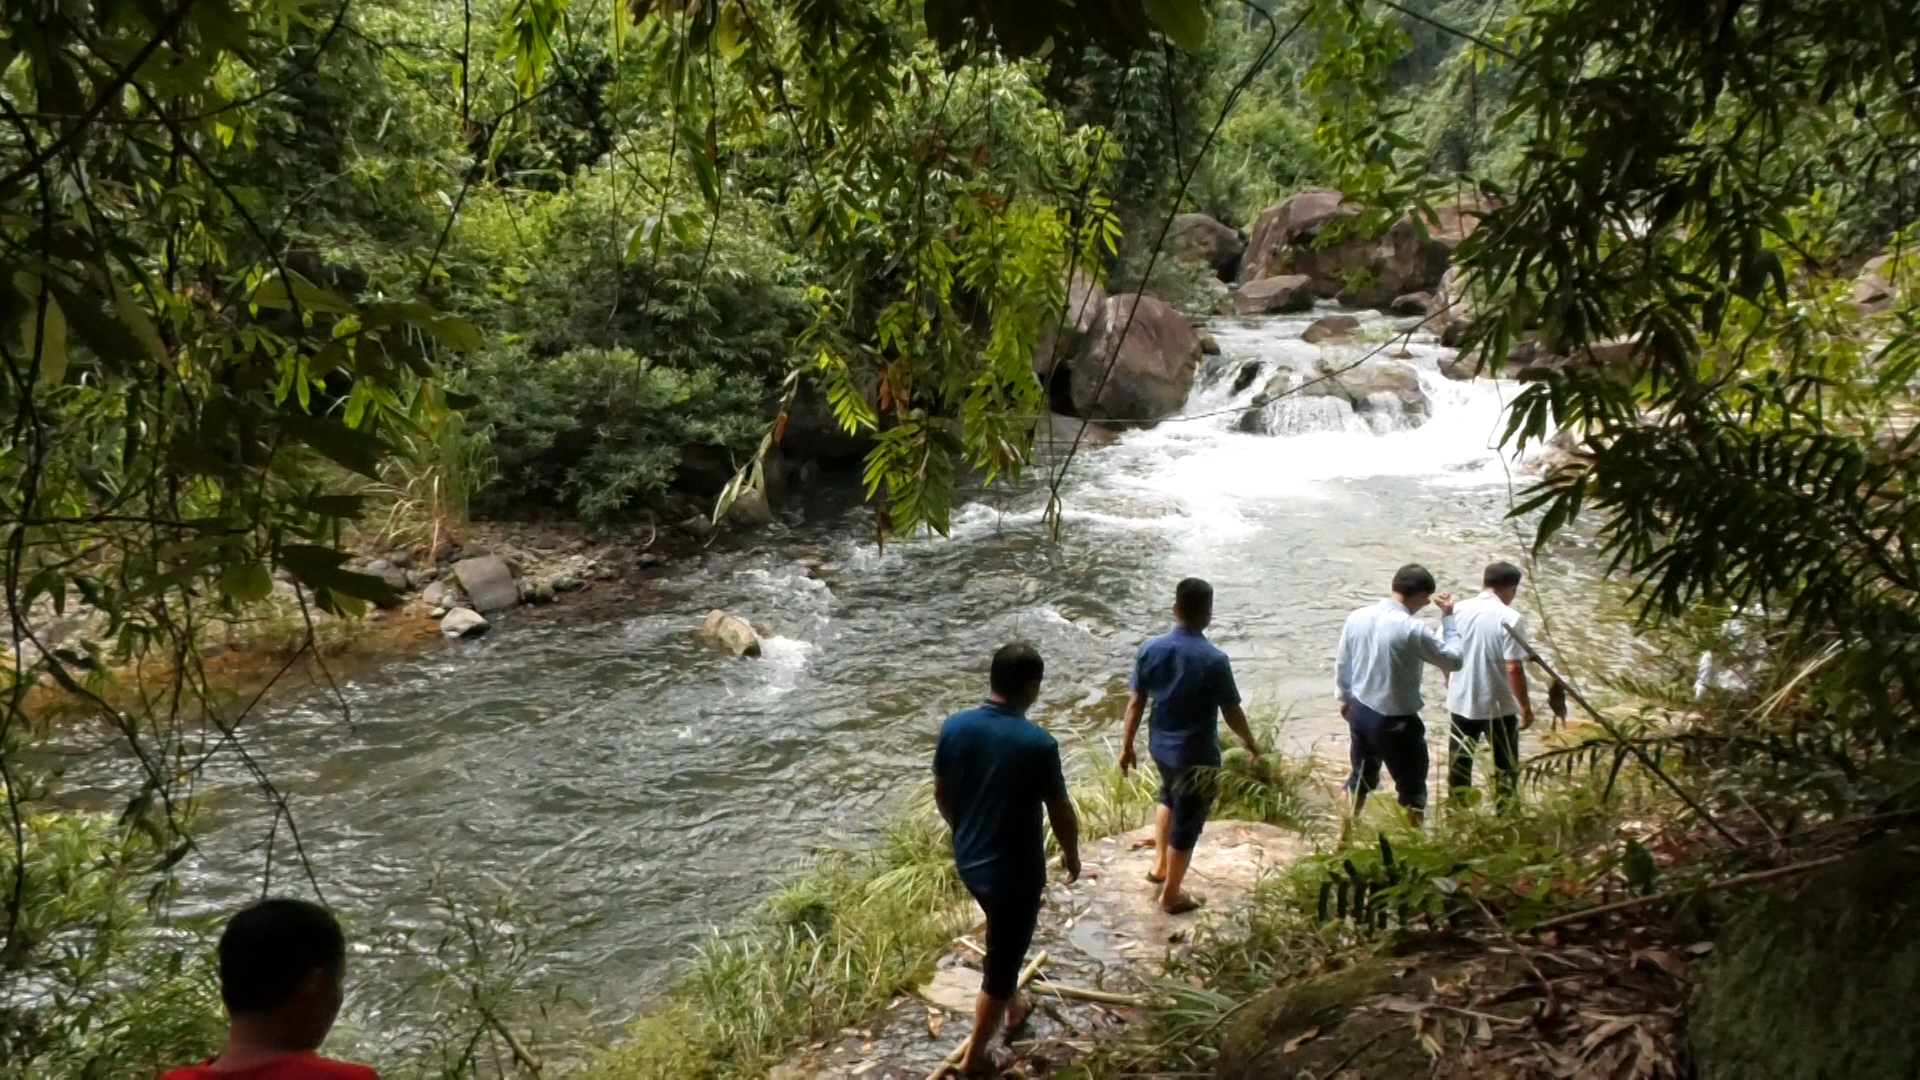 Đây là thác nước đẹp như phim ở Thanh Hóa, có lan rừng thơm, dưới suối vô số cá, tôm lạ mắt- Ảnh 2.